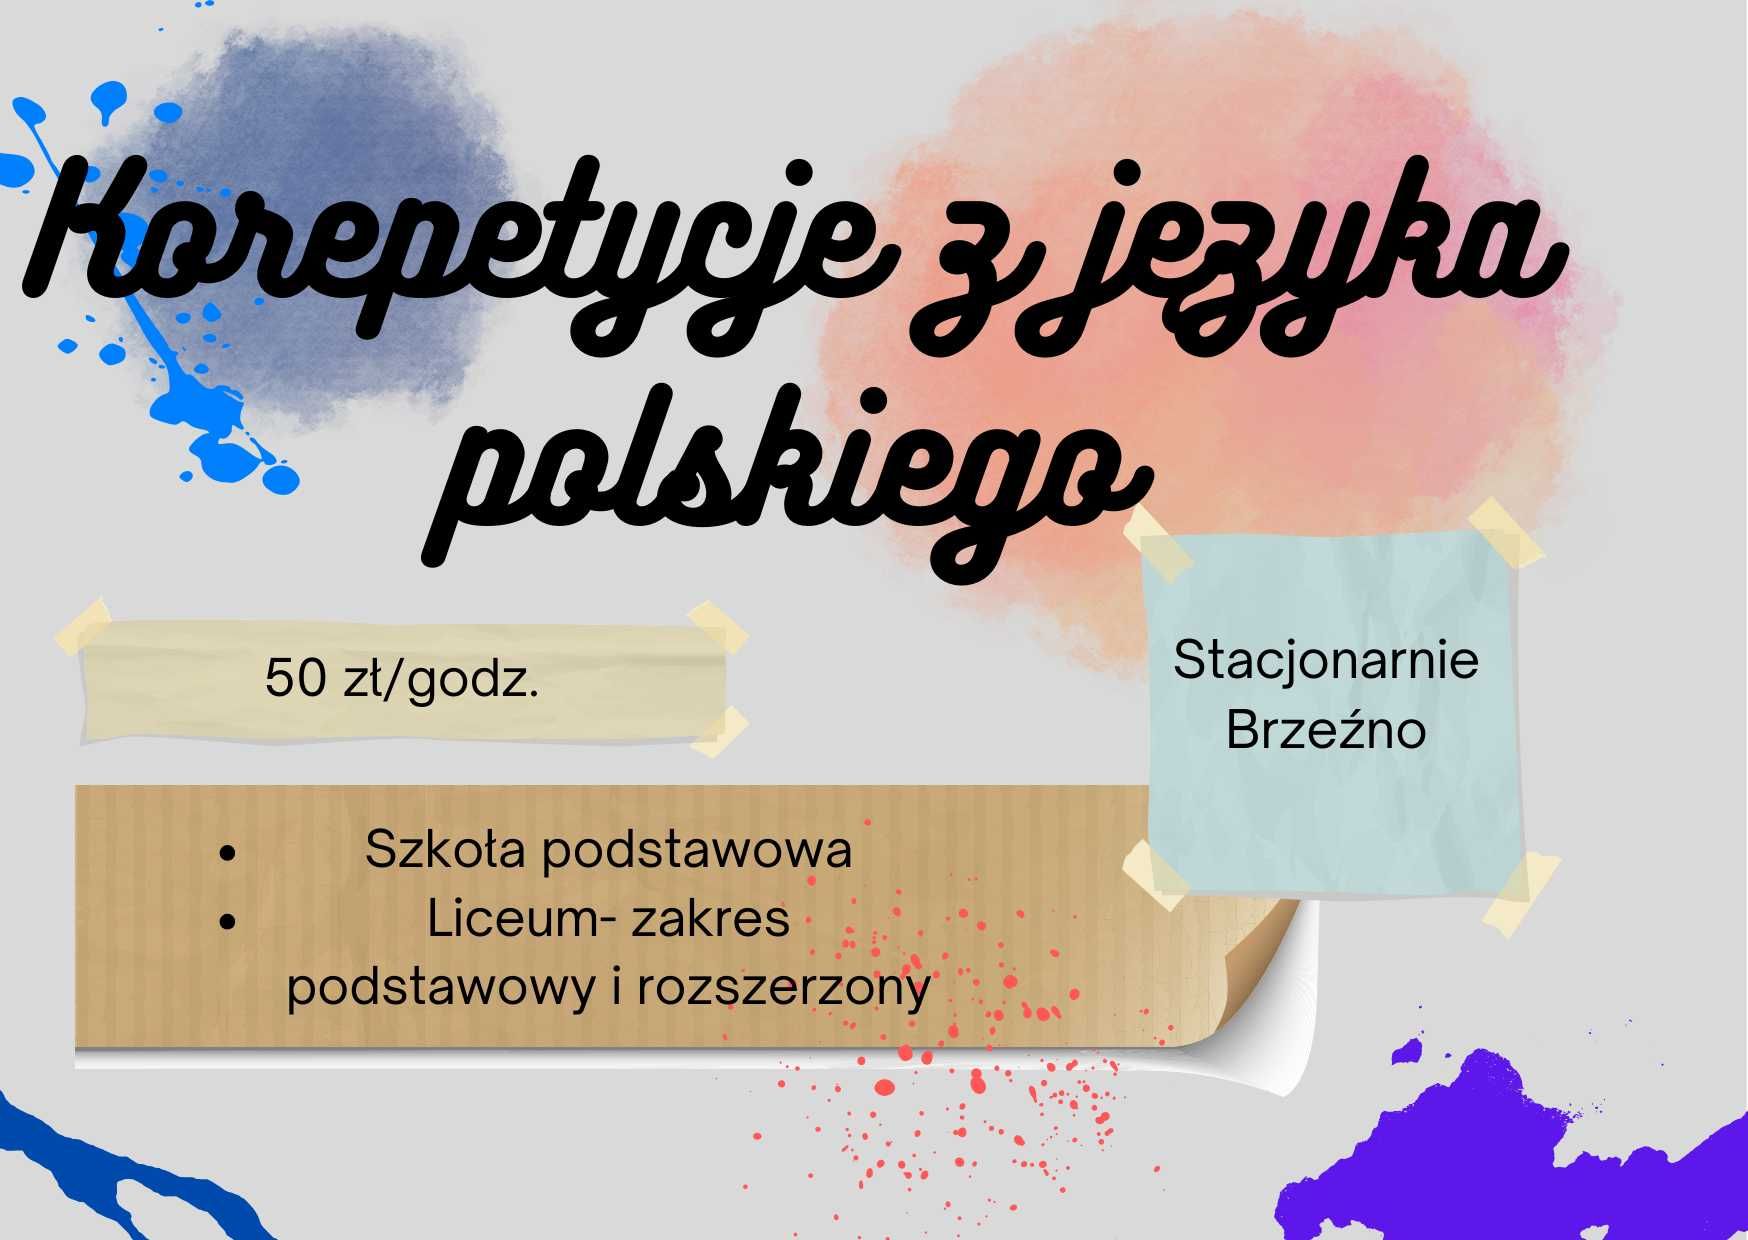 Korepetycje z języka polskiego